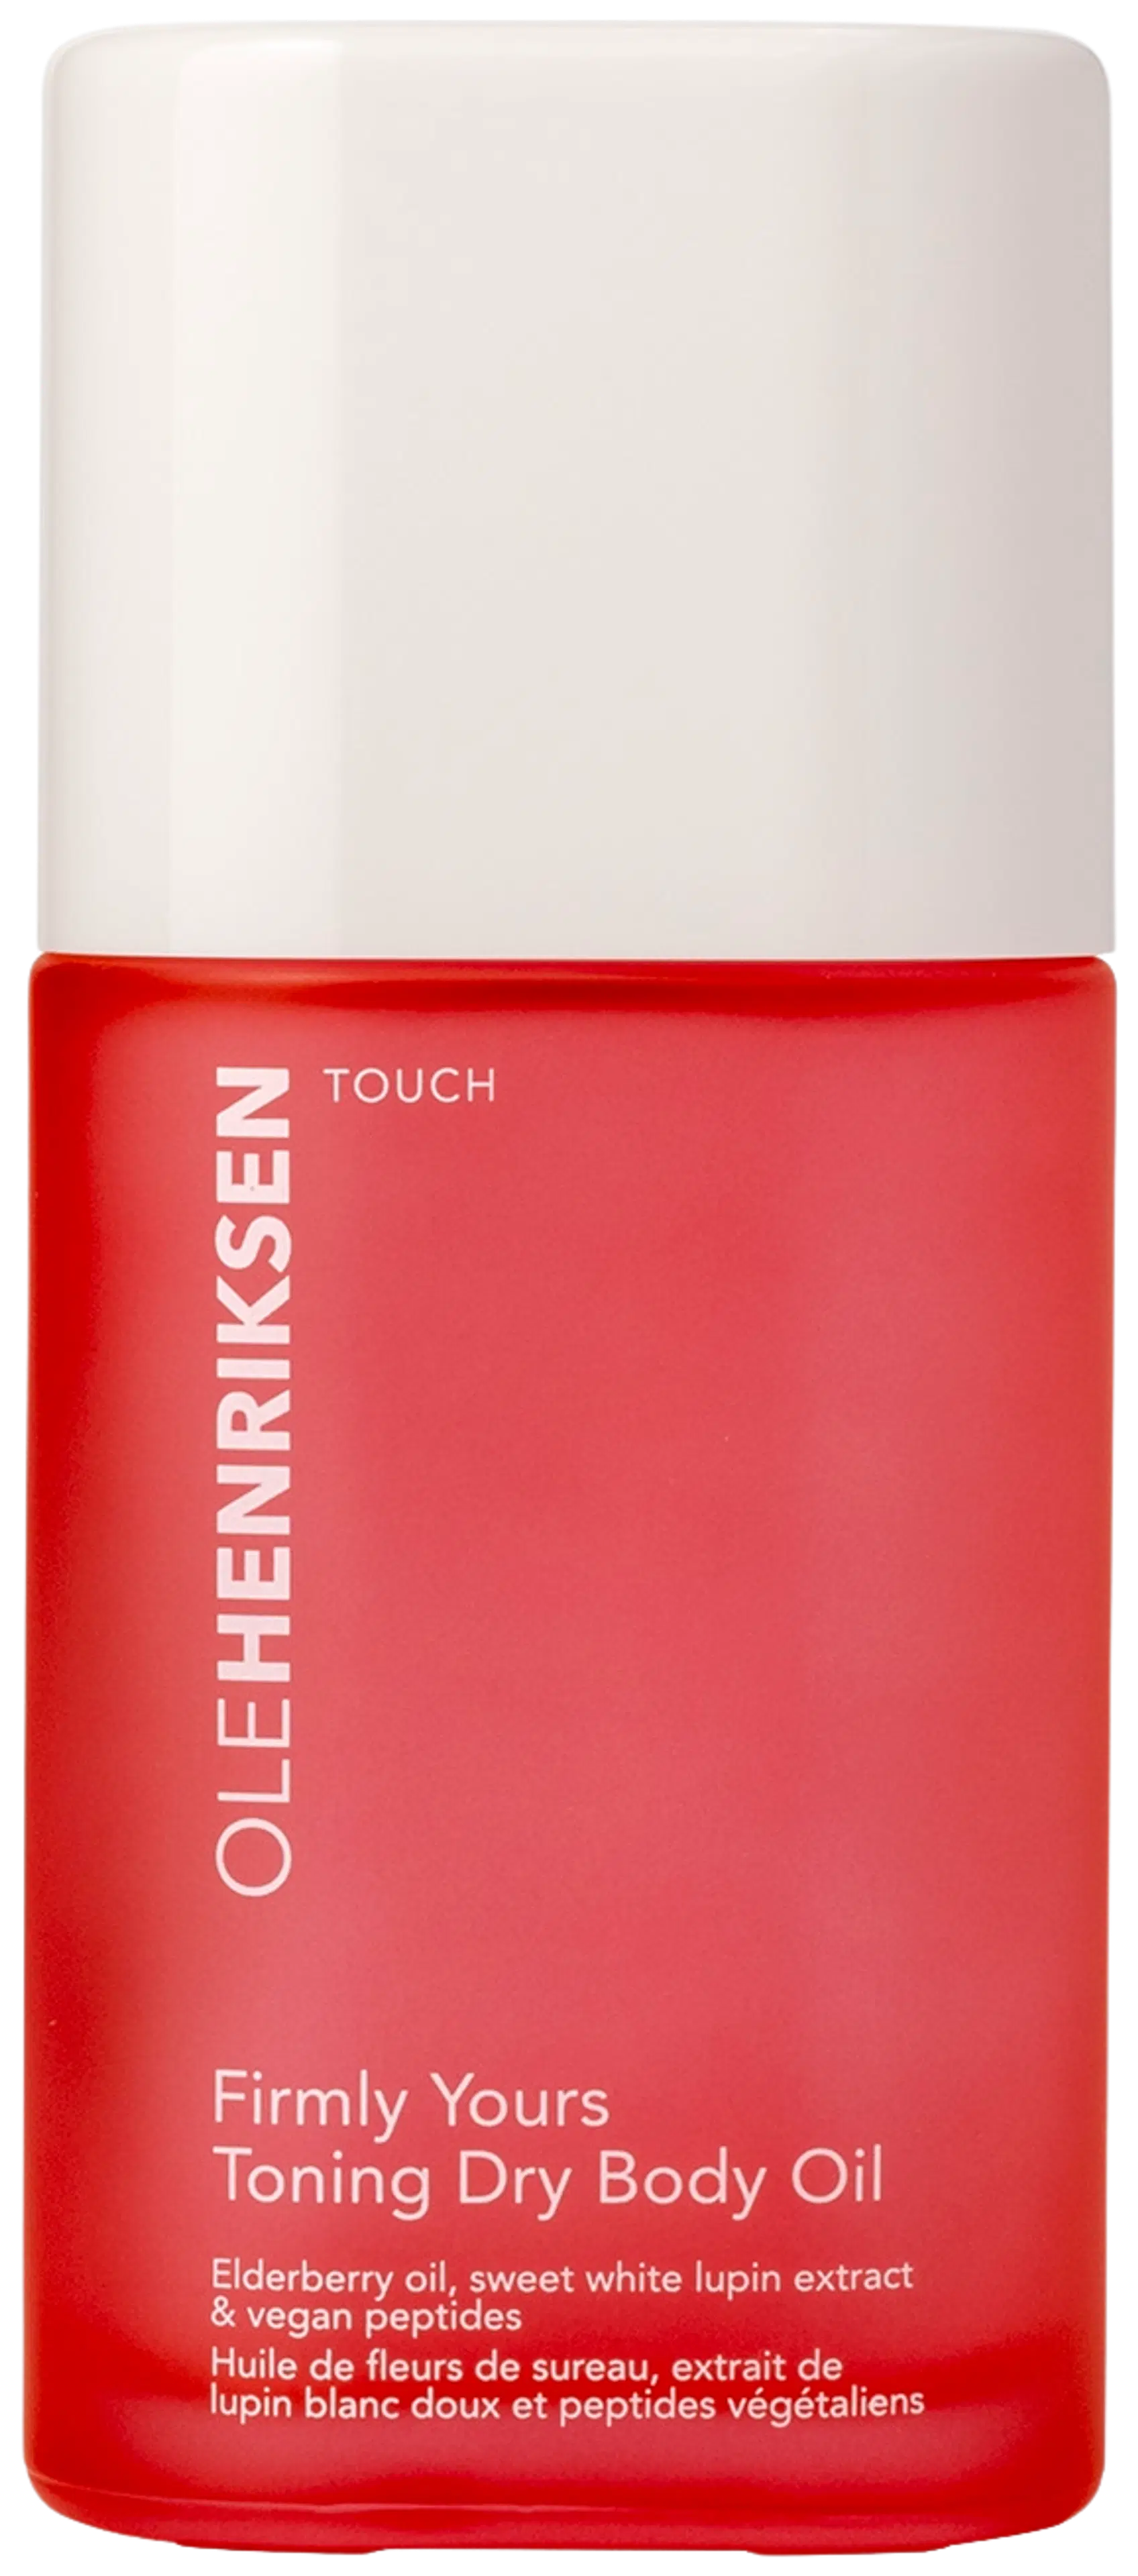 OleHenriksen Touch Firmly Yours Dry Body Oil kiinteyttävä vartaloöljy 100 ml